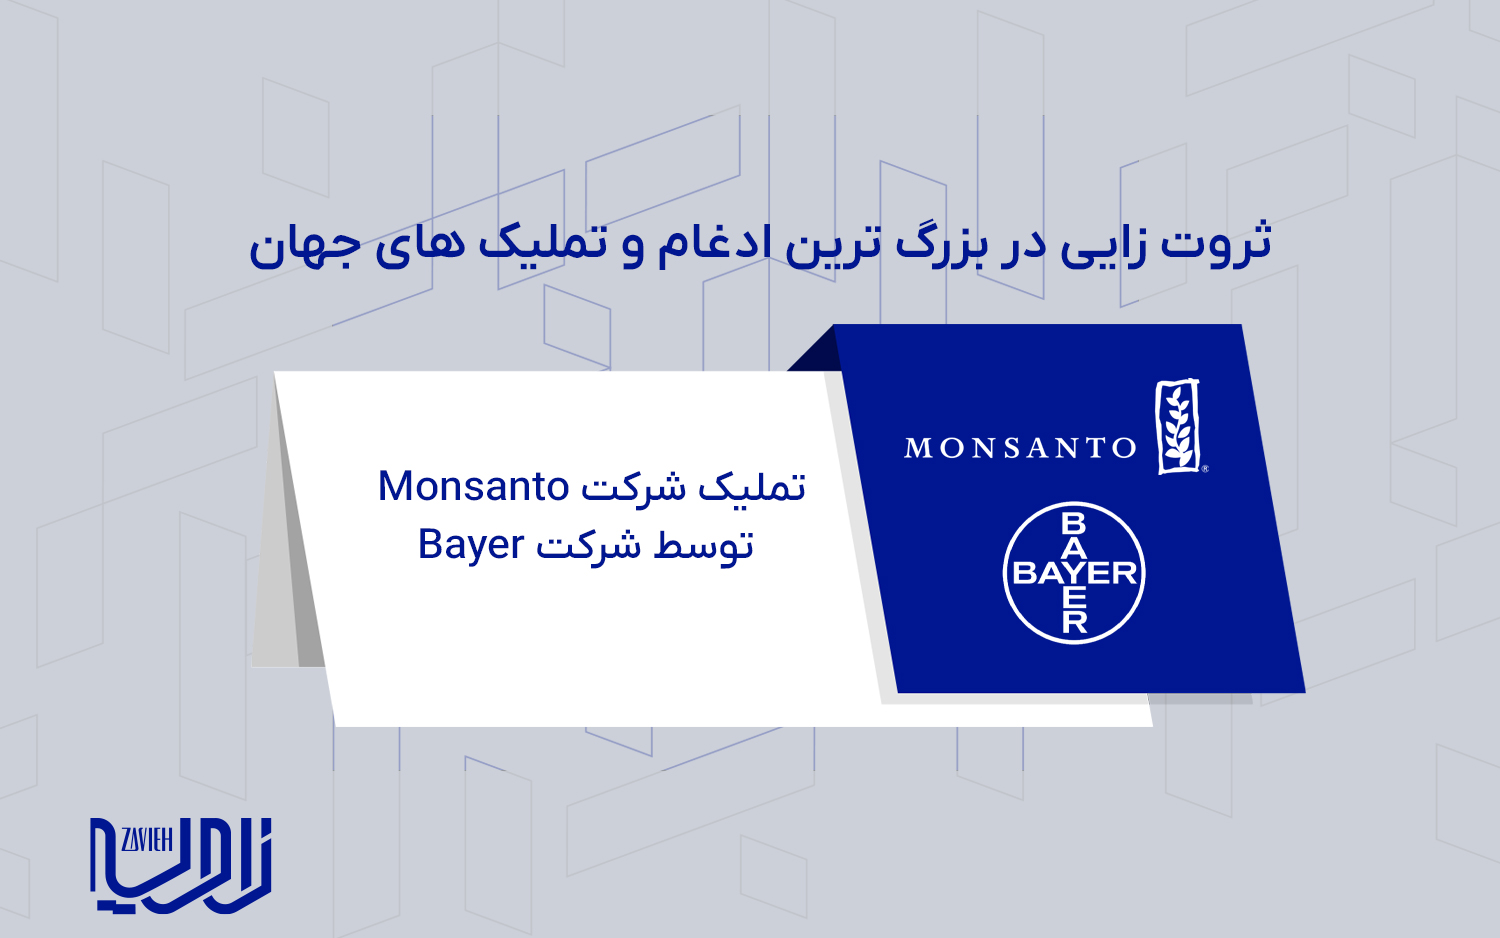 تملک شرکت Monsanto توسط شرکت Bayer